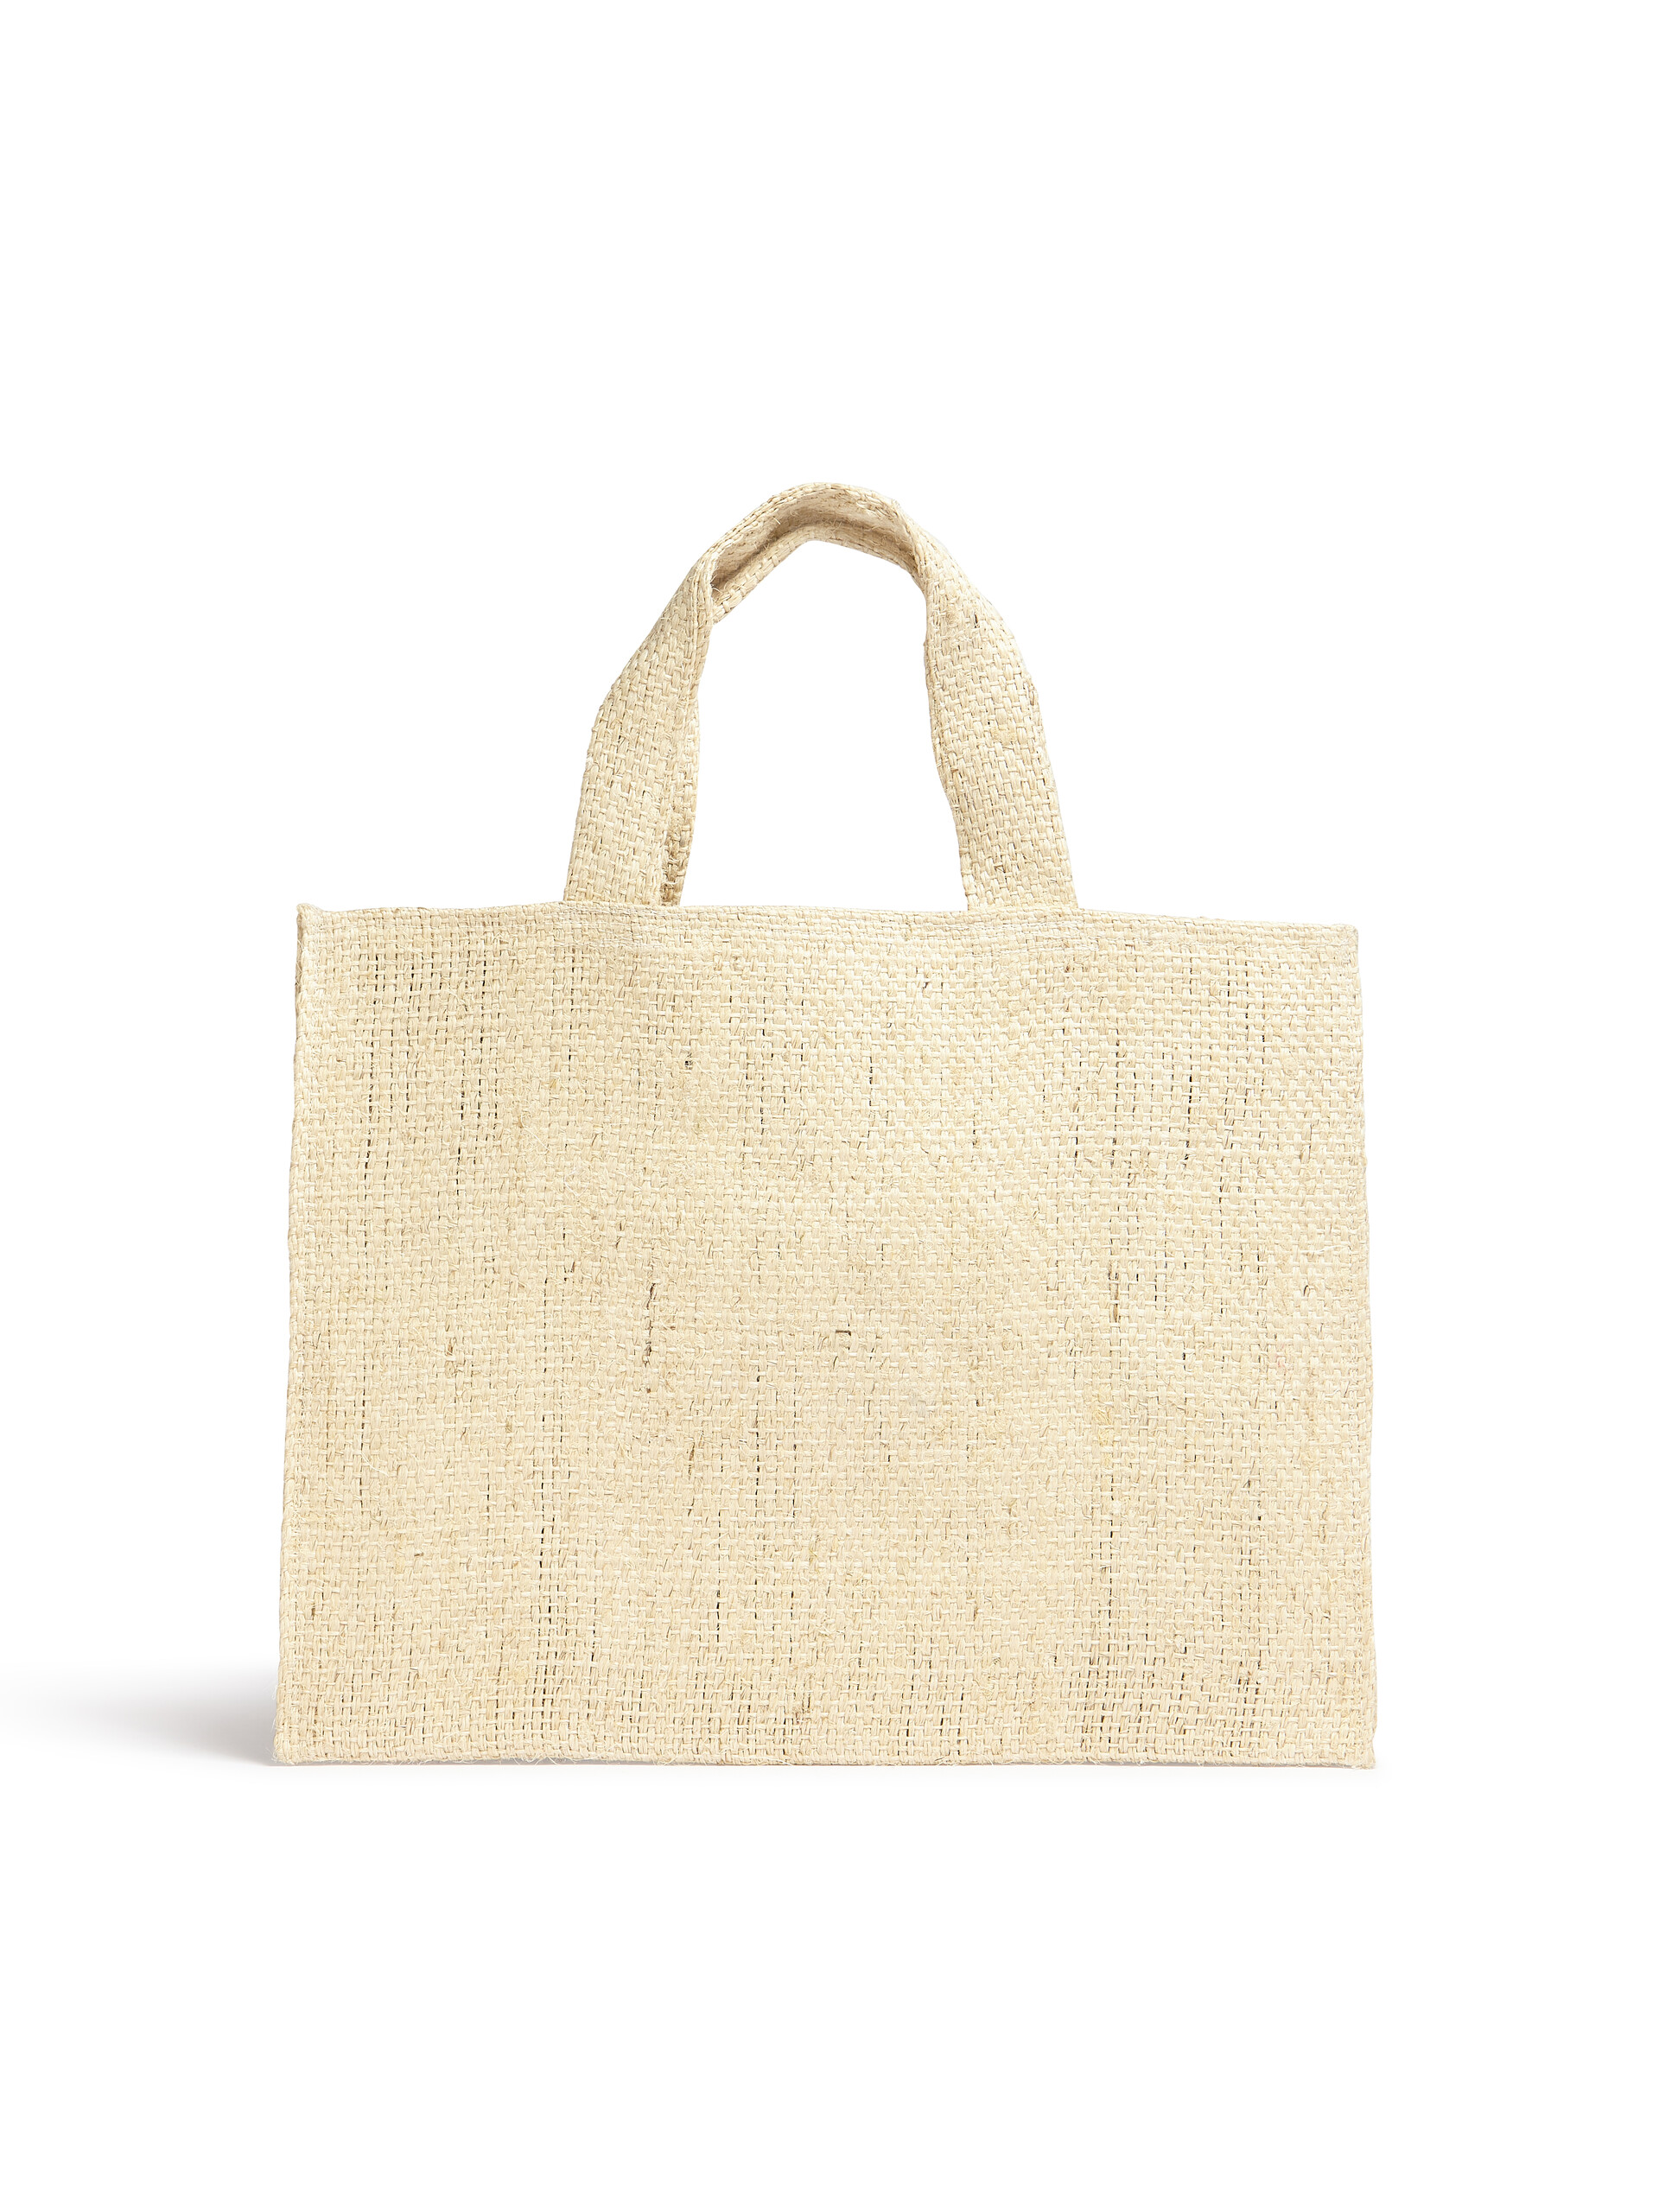 MARNI MARKET CANAPA small bag in black and orange natural fiber - Shopping Bags - Image 3